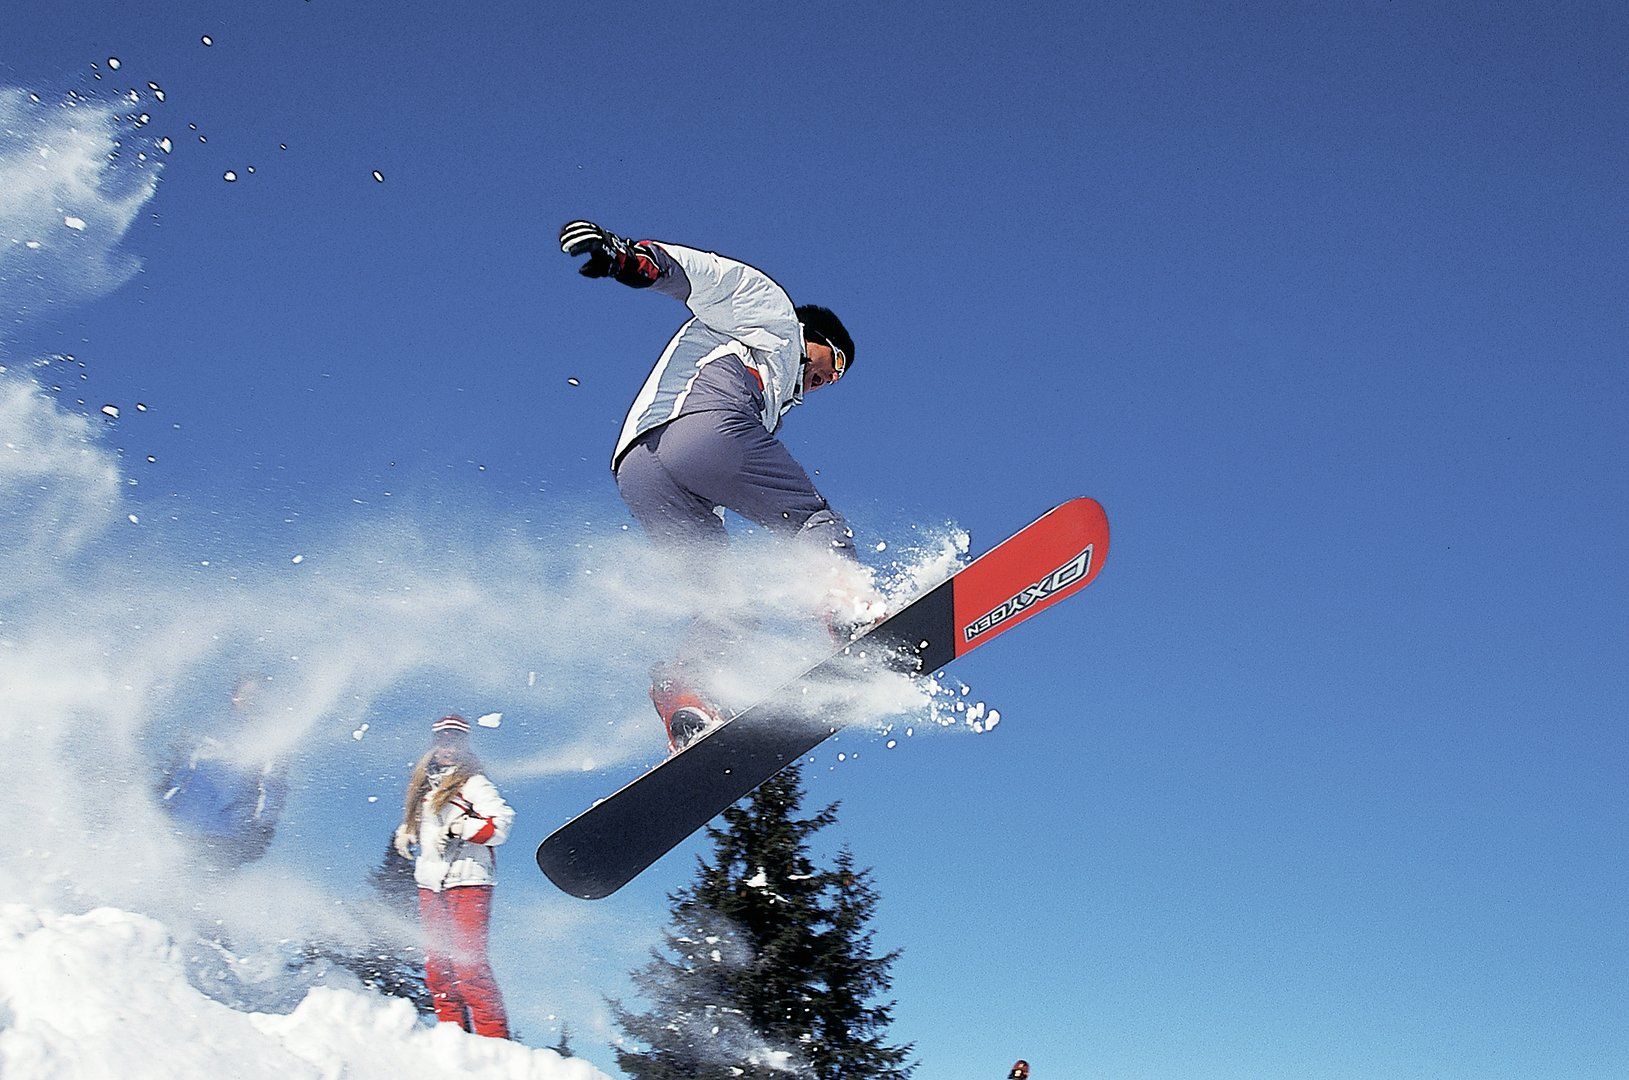 Abwechslung im Winterurlaub - es ist für alle etwas dabei - Skifahren oder Snowboarden